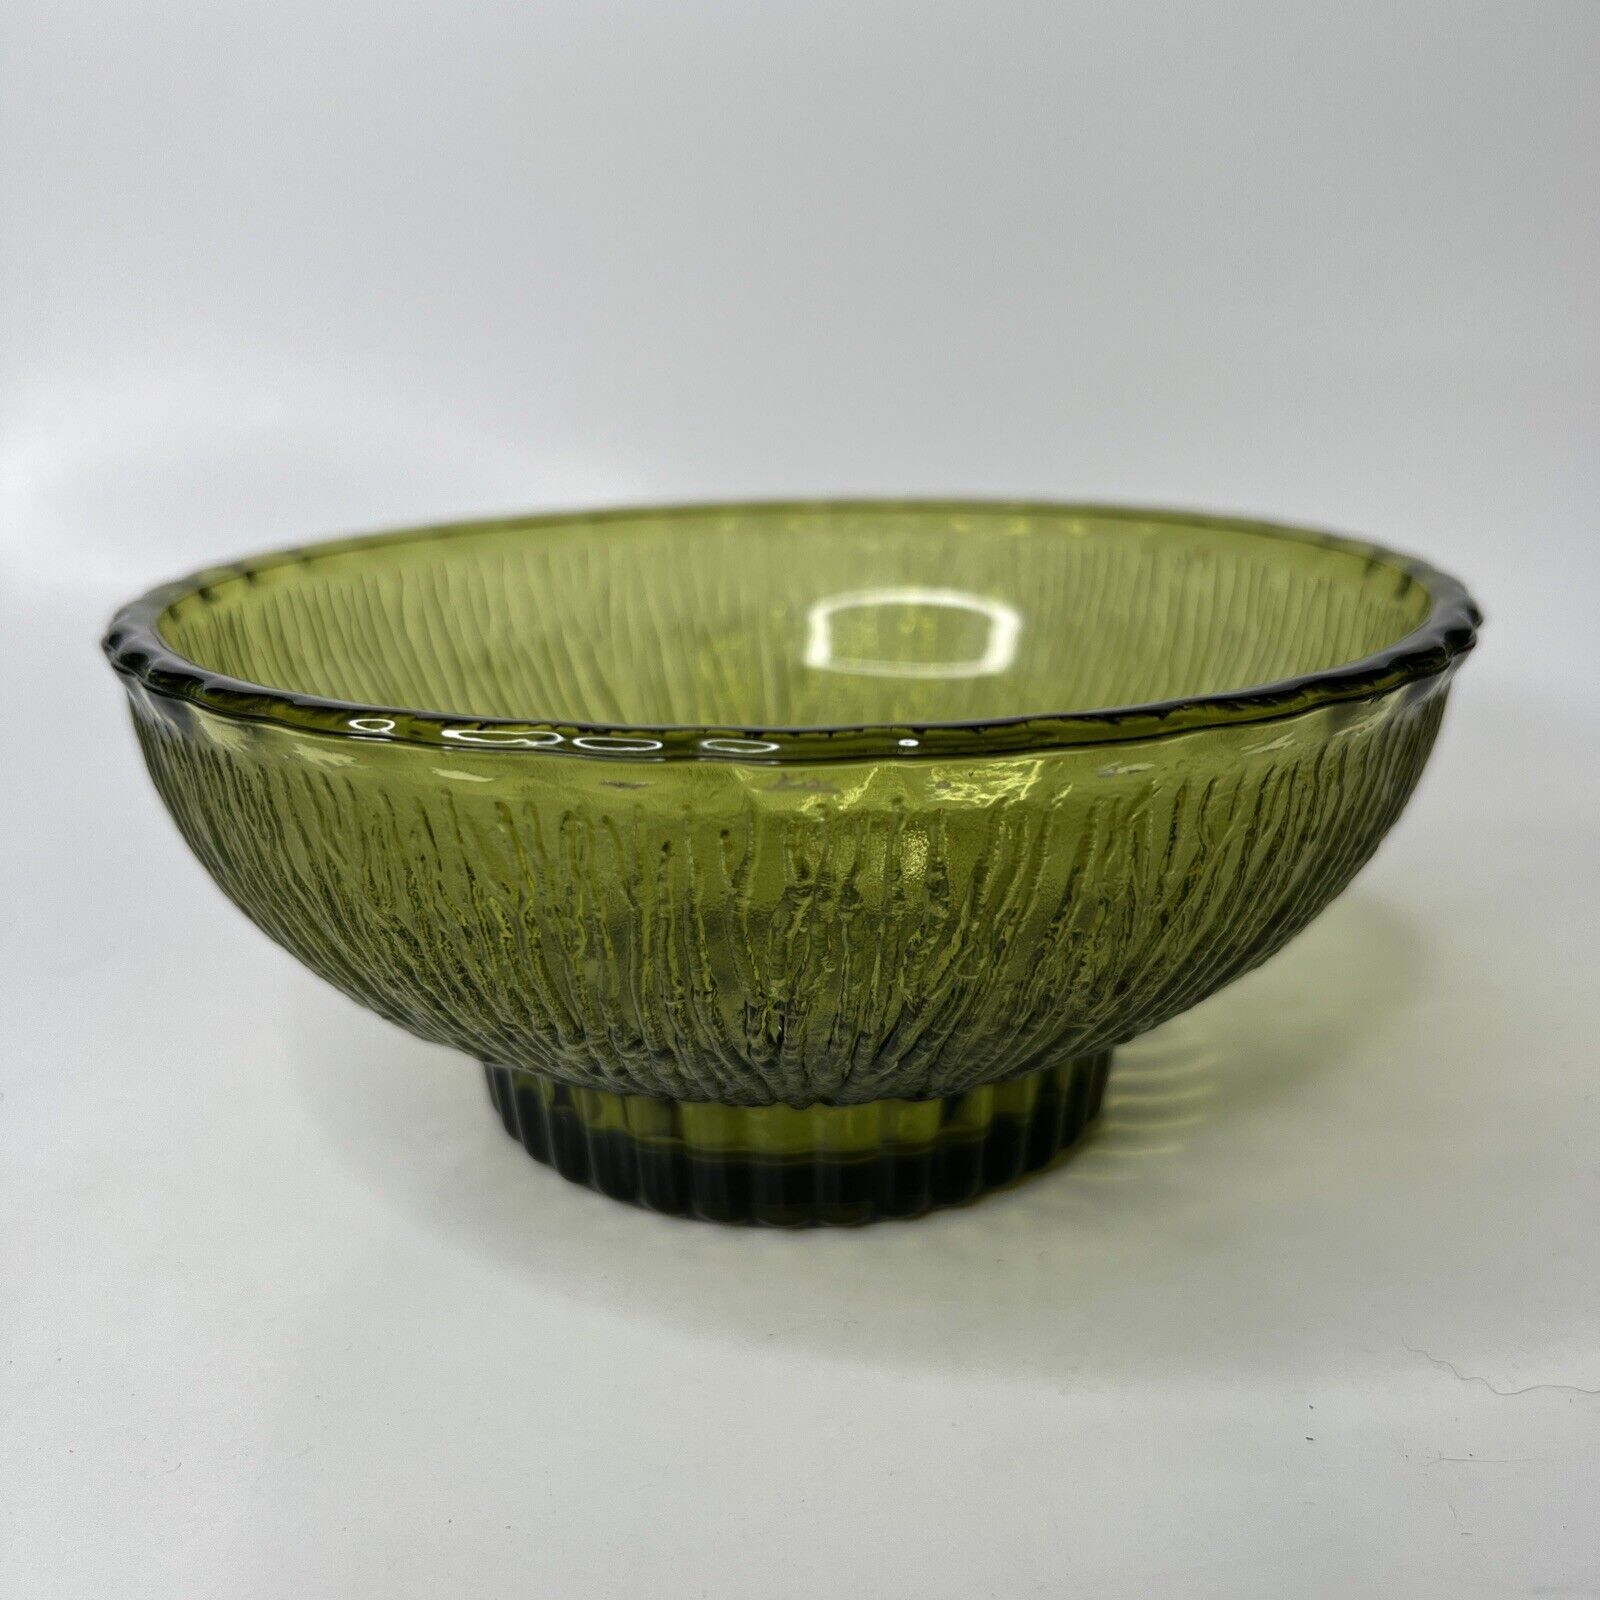 Vintage 1975 FTD Florists green glass leaf pattern pedestal bowl flower vase